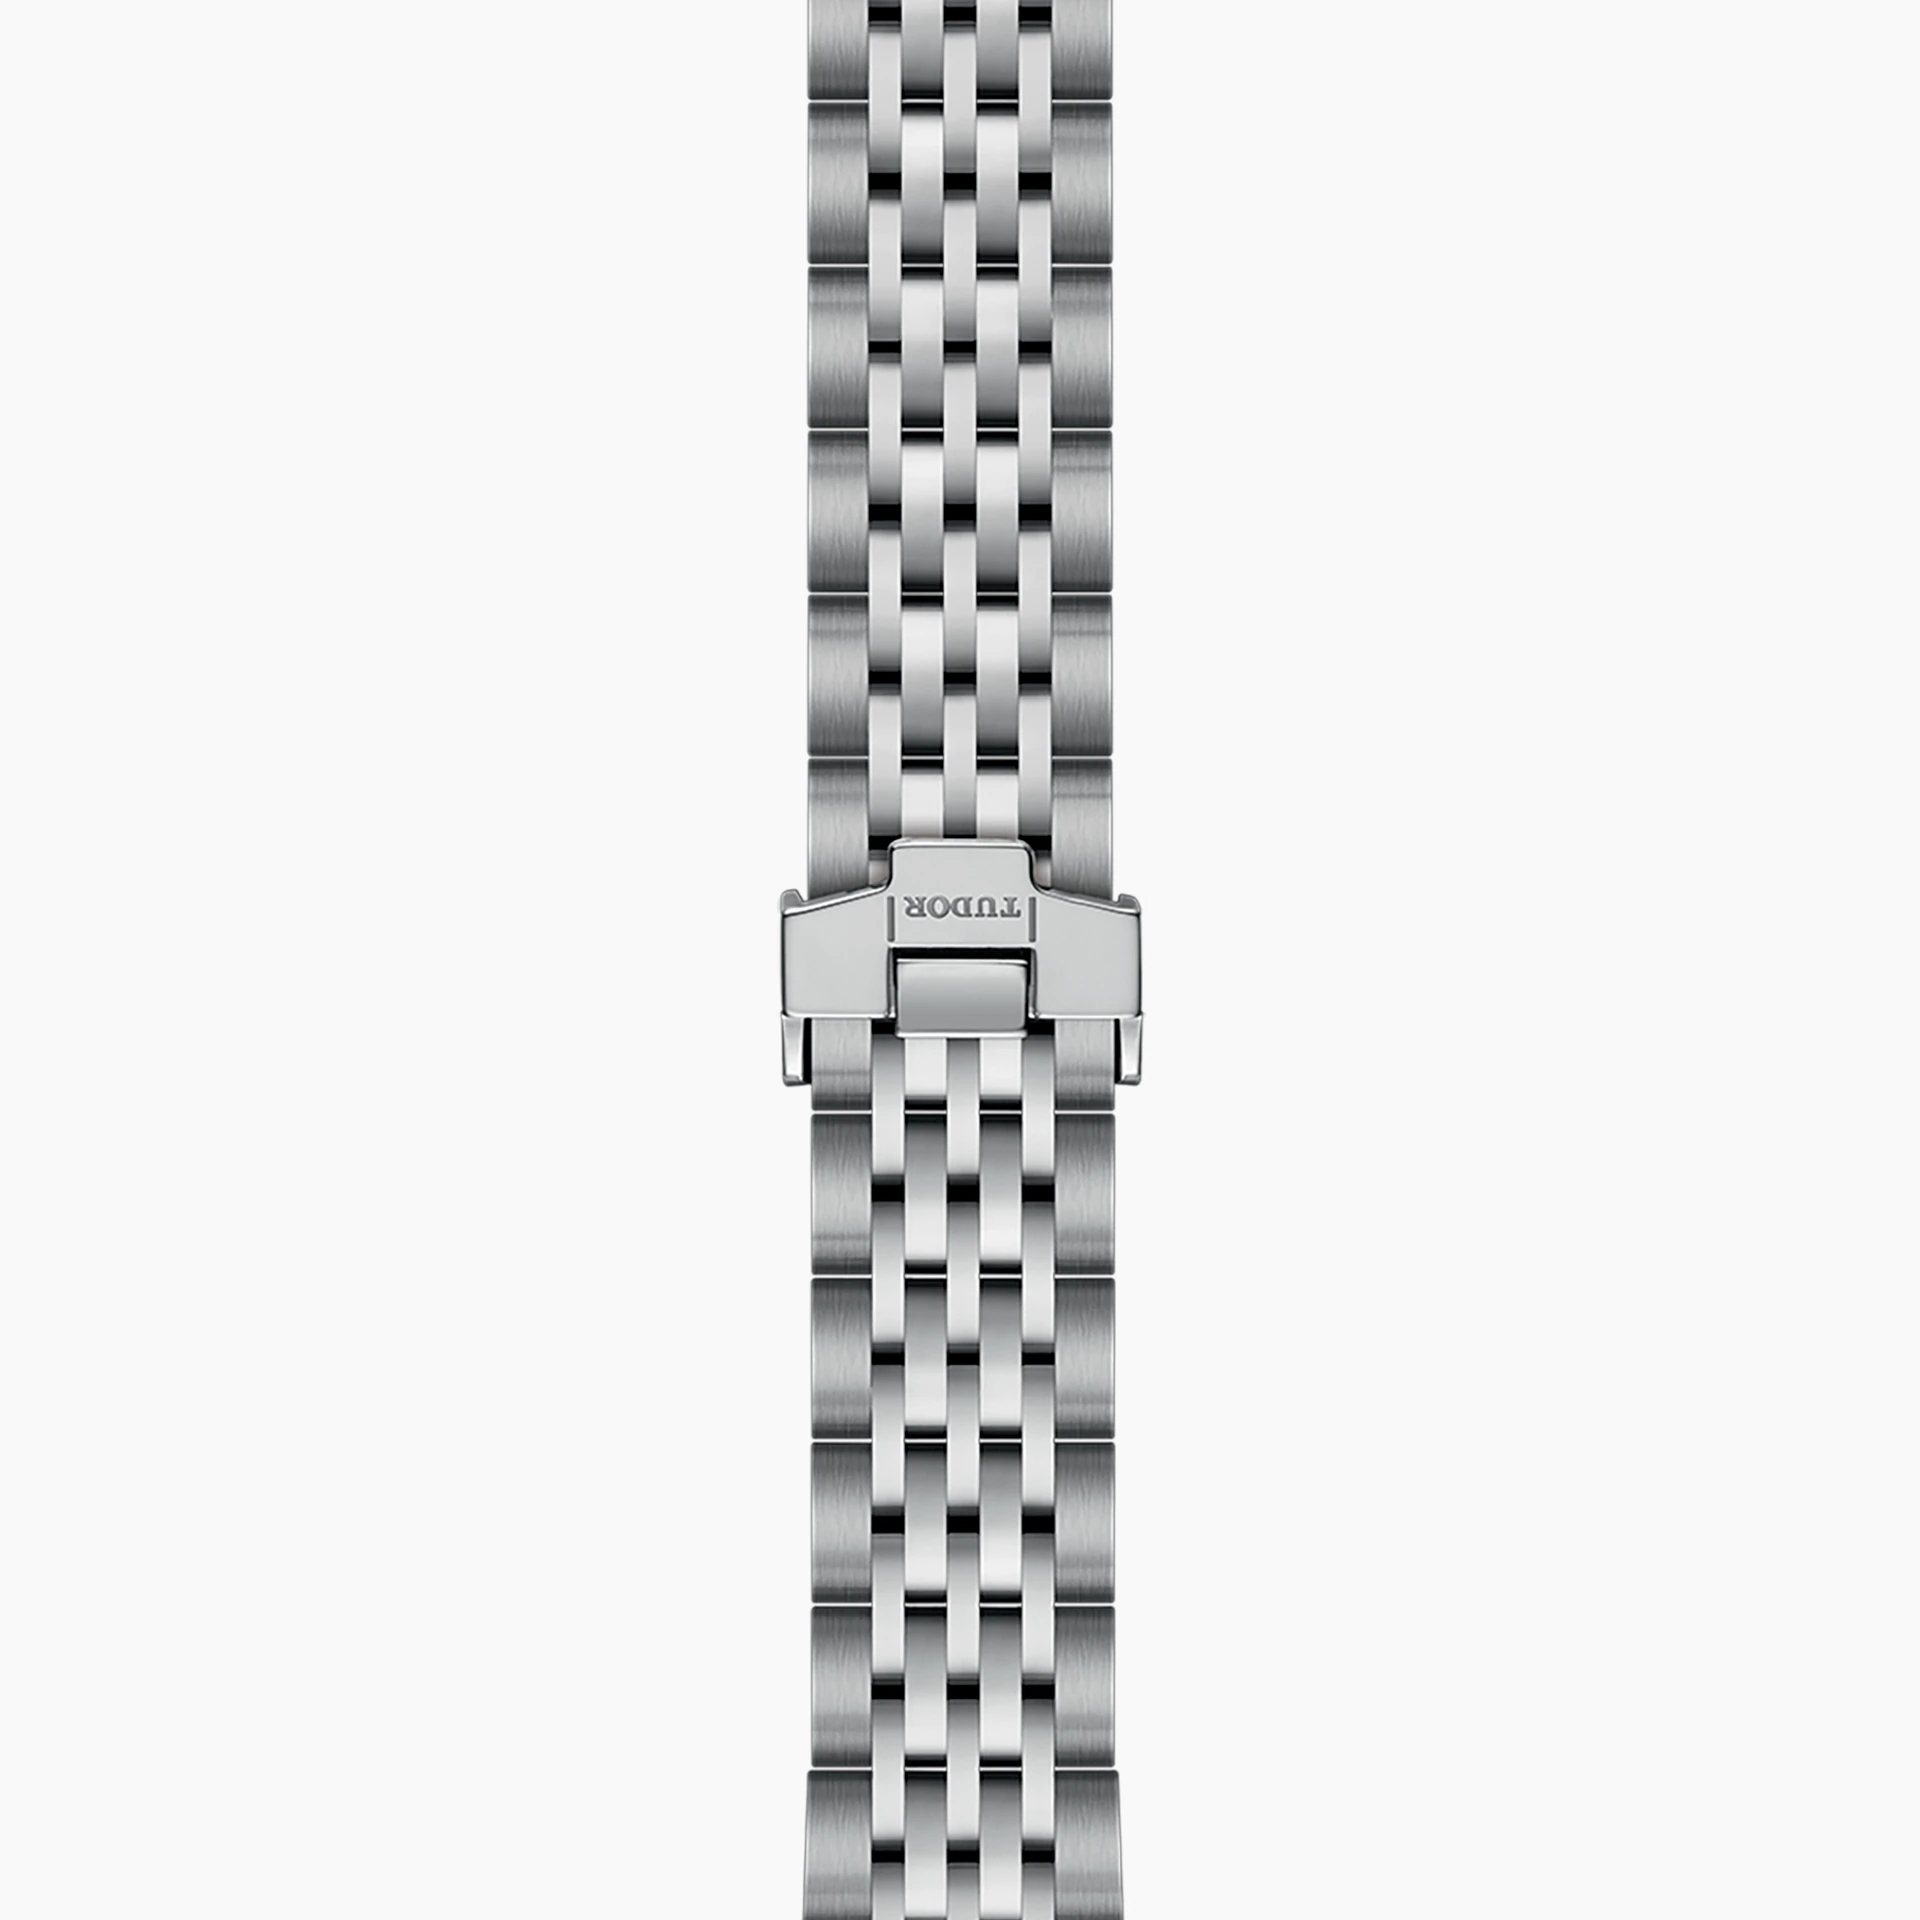 Tudor 1926, Stainless Steel, 28mm, Ref# M91350-0011, Bracelet